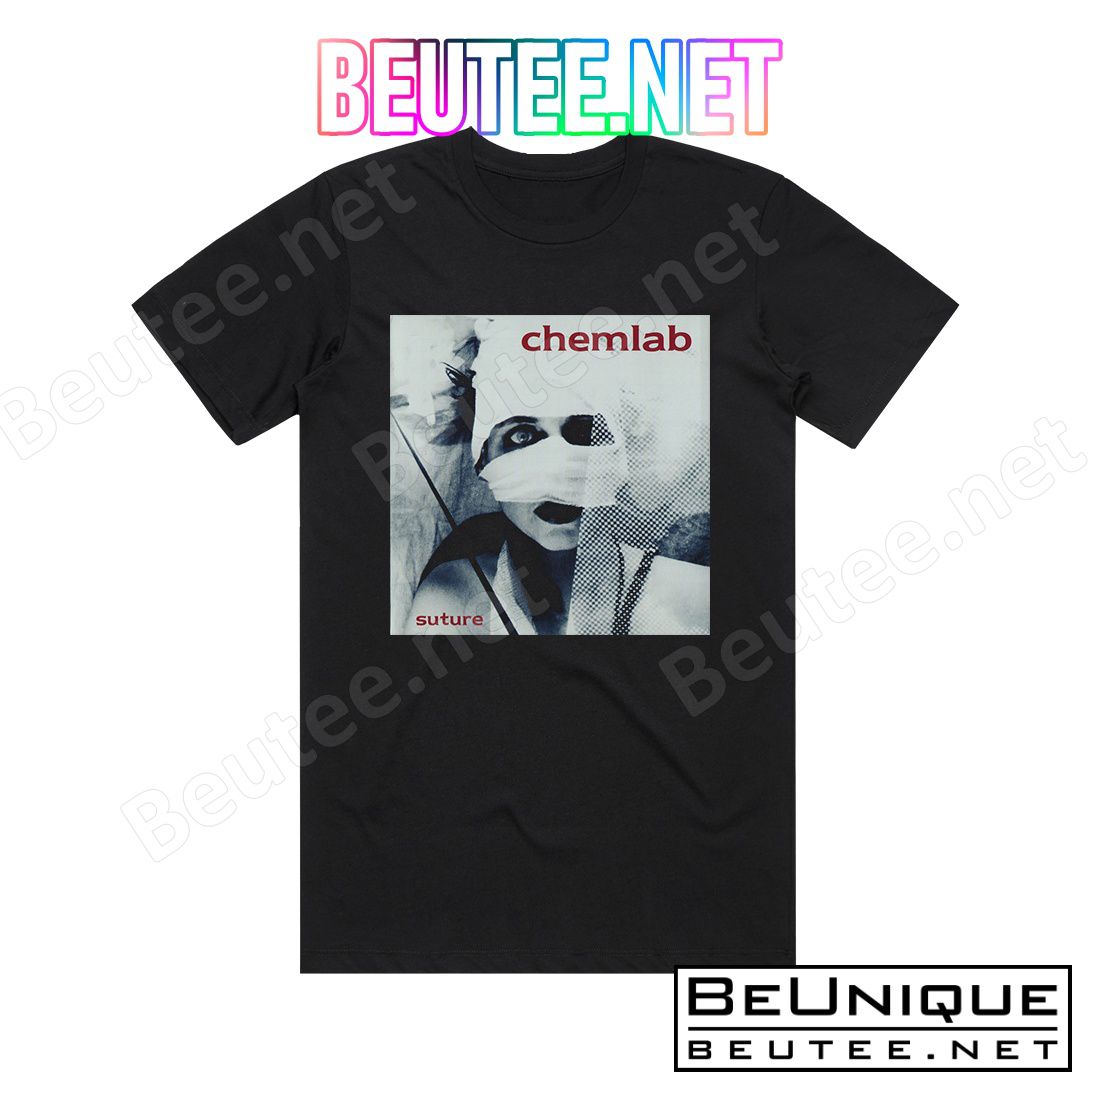 Chemlab Suture Album Cover T-Shirt